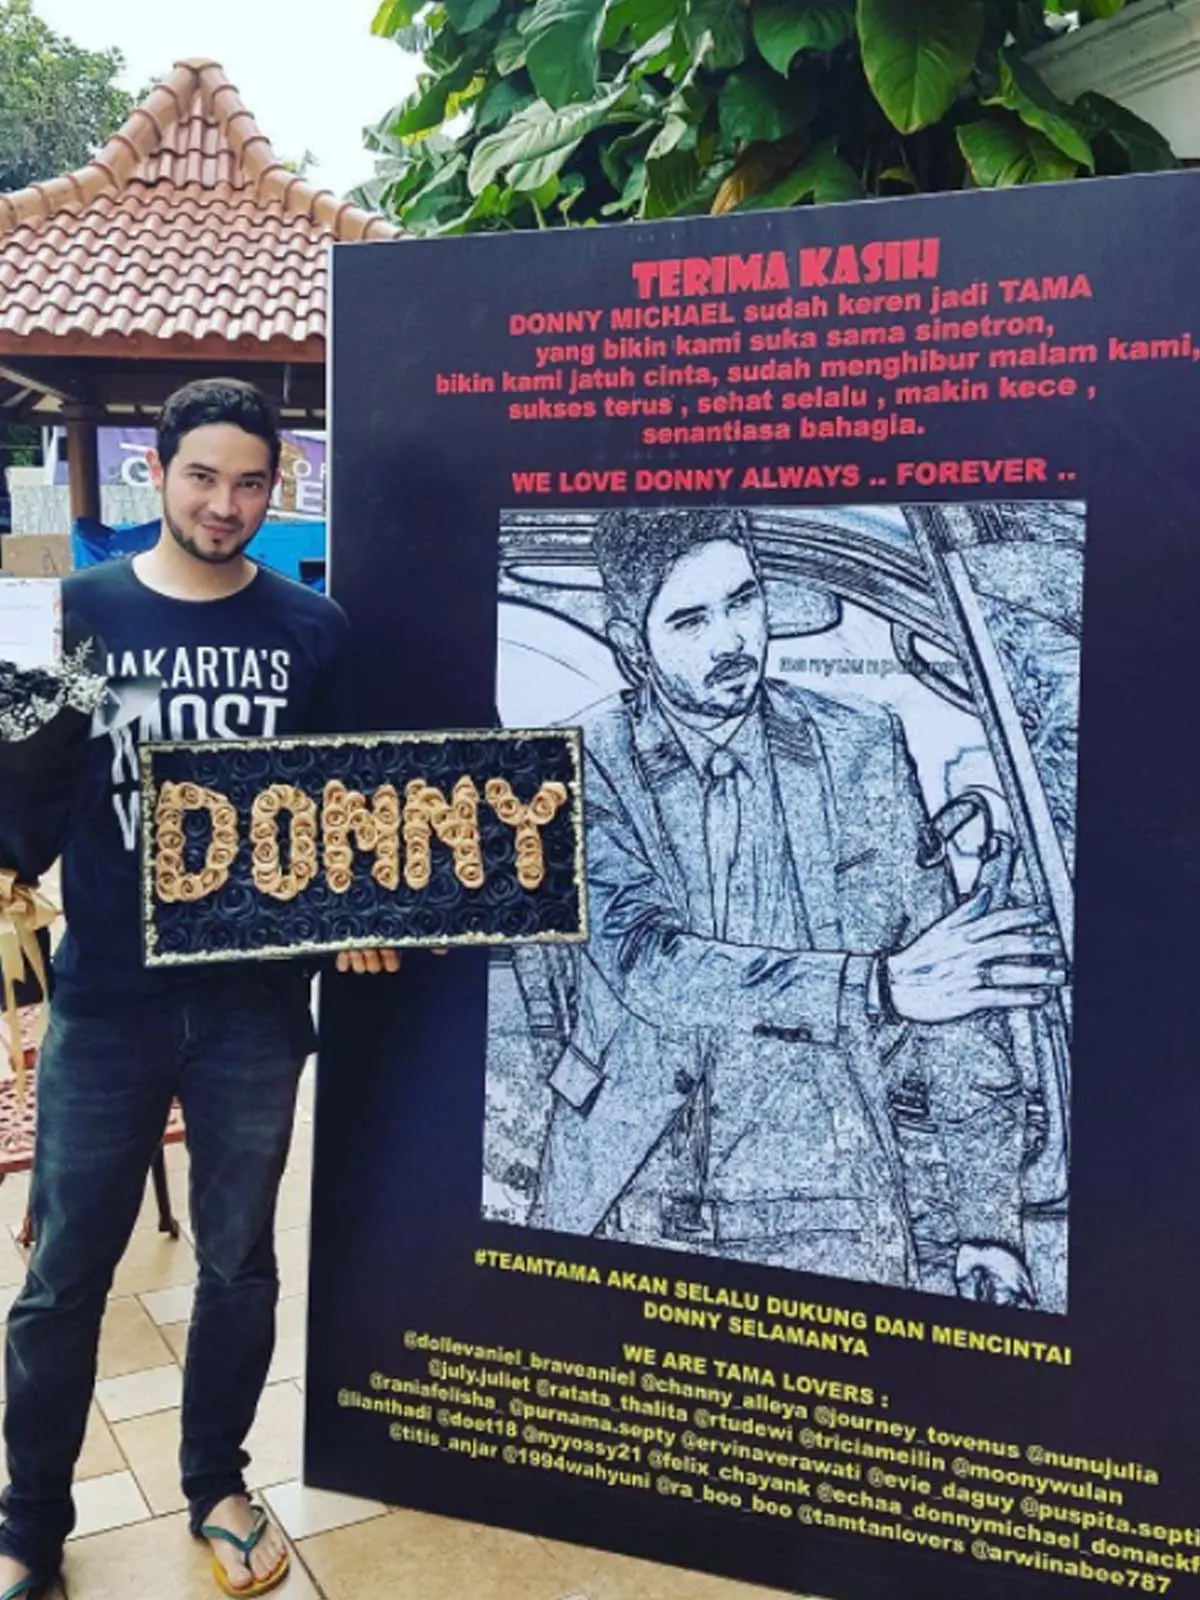 Donny Michael mendapat hadiah dari fans berupa karangan bunga papan besar bergambar karikatur. (Instagram)